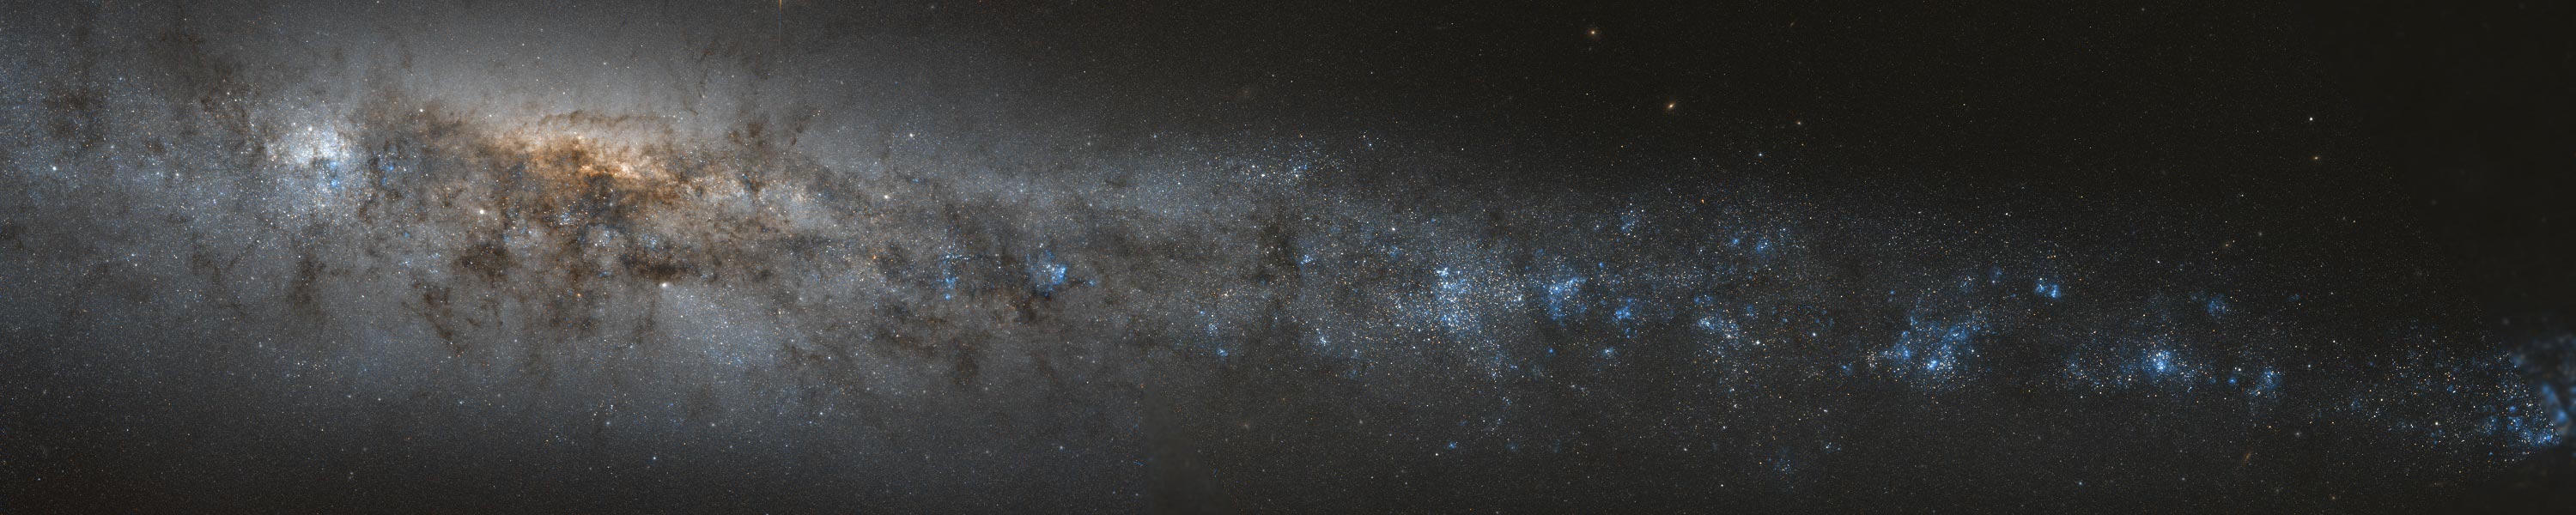 Das Panorama zeigt eine von der Seite sichtbare Galaxie mit vielen dunklen Staubwolken und blauen Sternbildungsregionen.